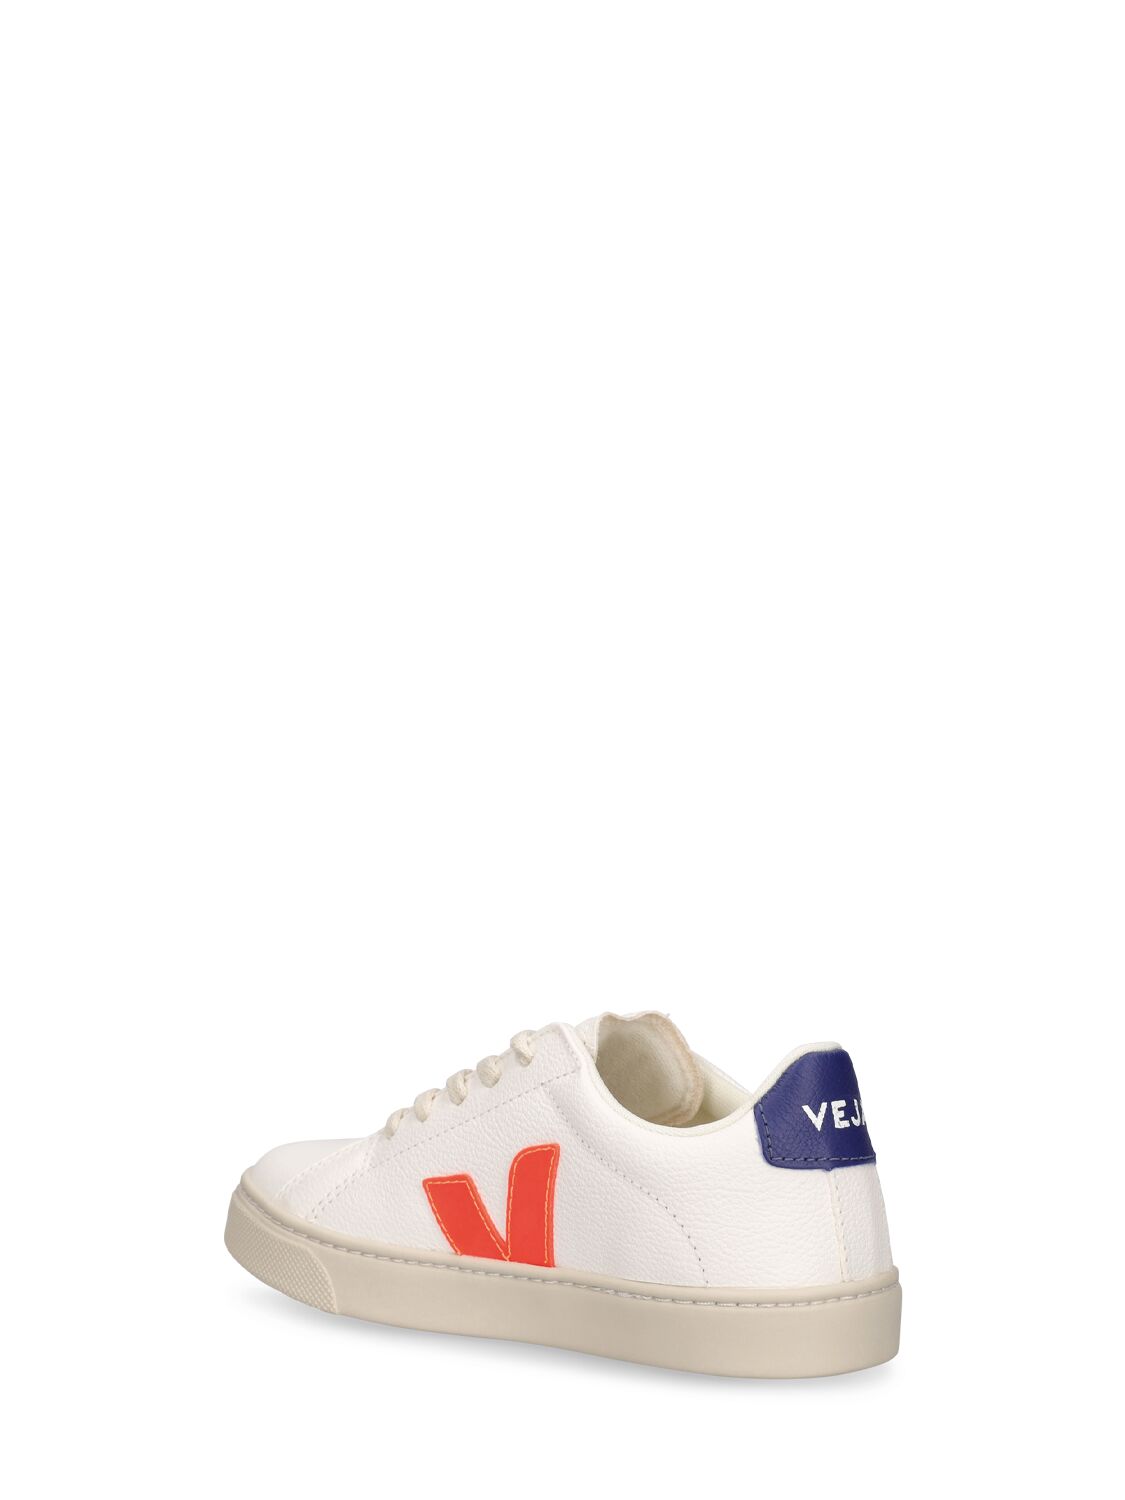 Shop Veja Esplar Chrome-free Leather Sneakers In White,multi